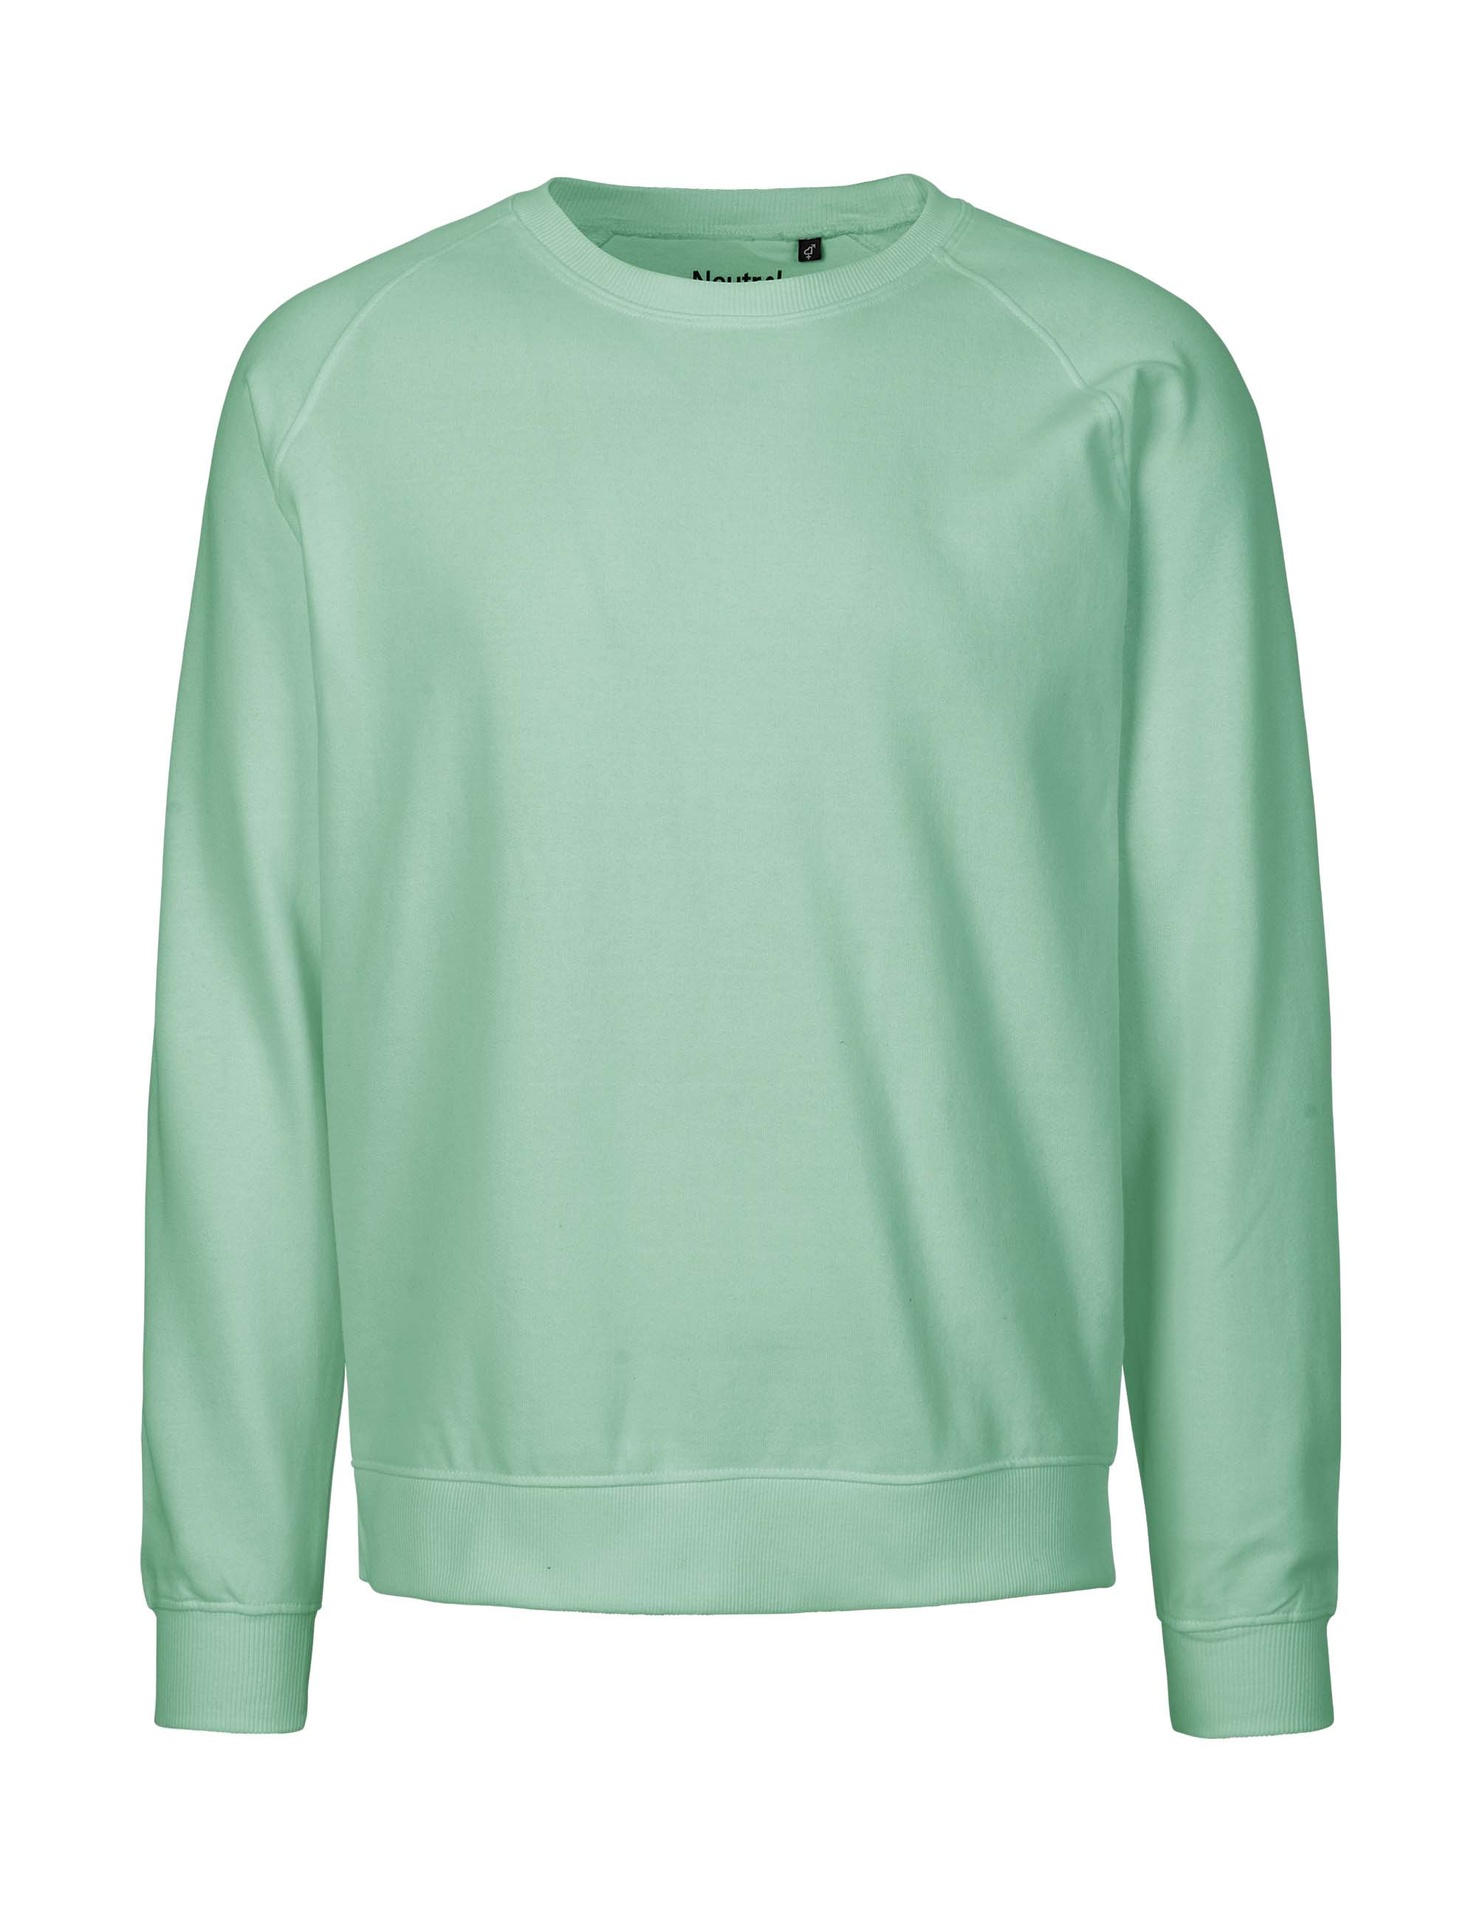 [PR/02823] Unisex Sweatshirt (Dusty Mint 40, XS)